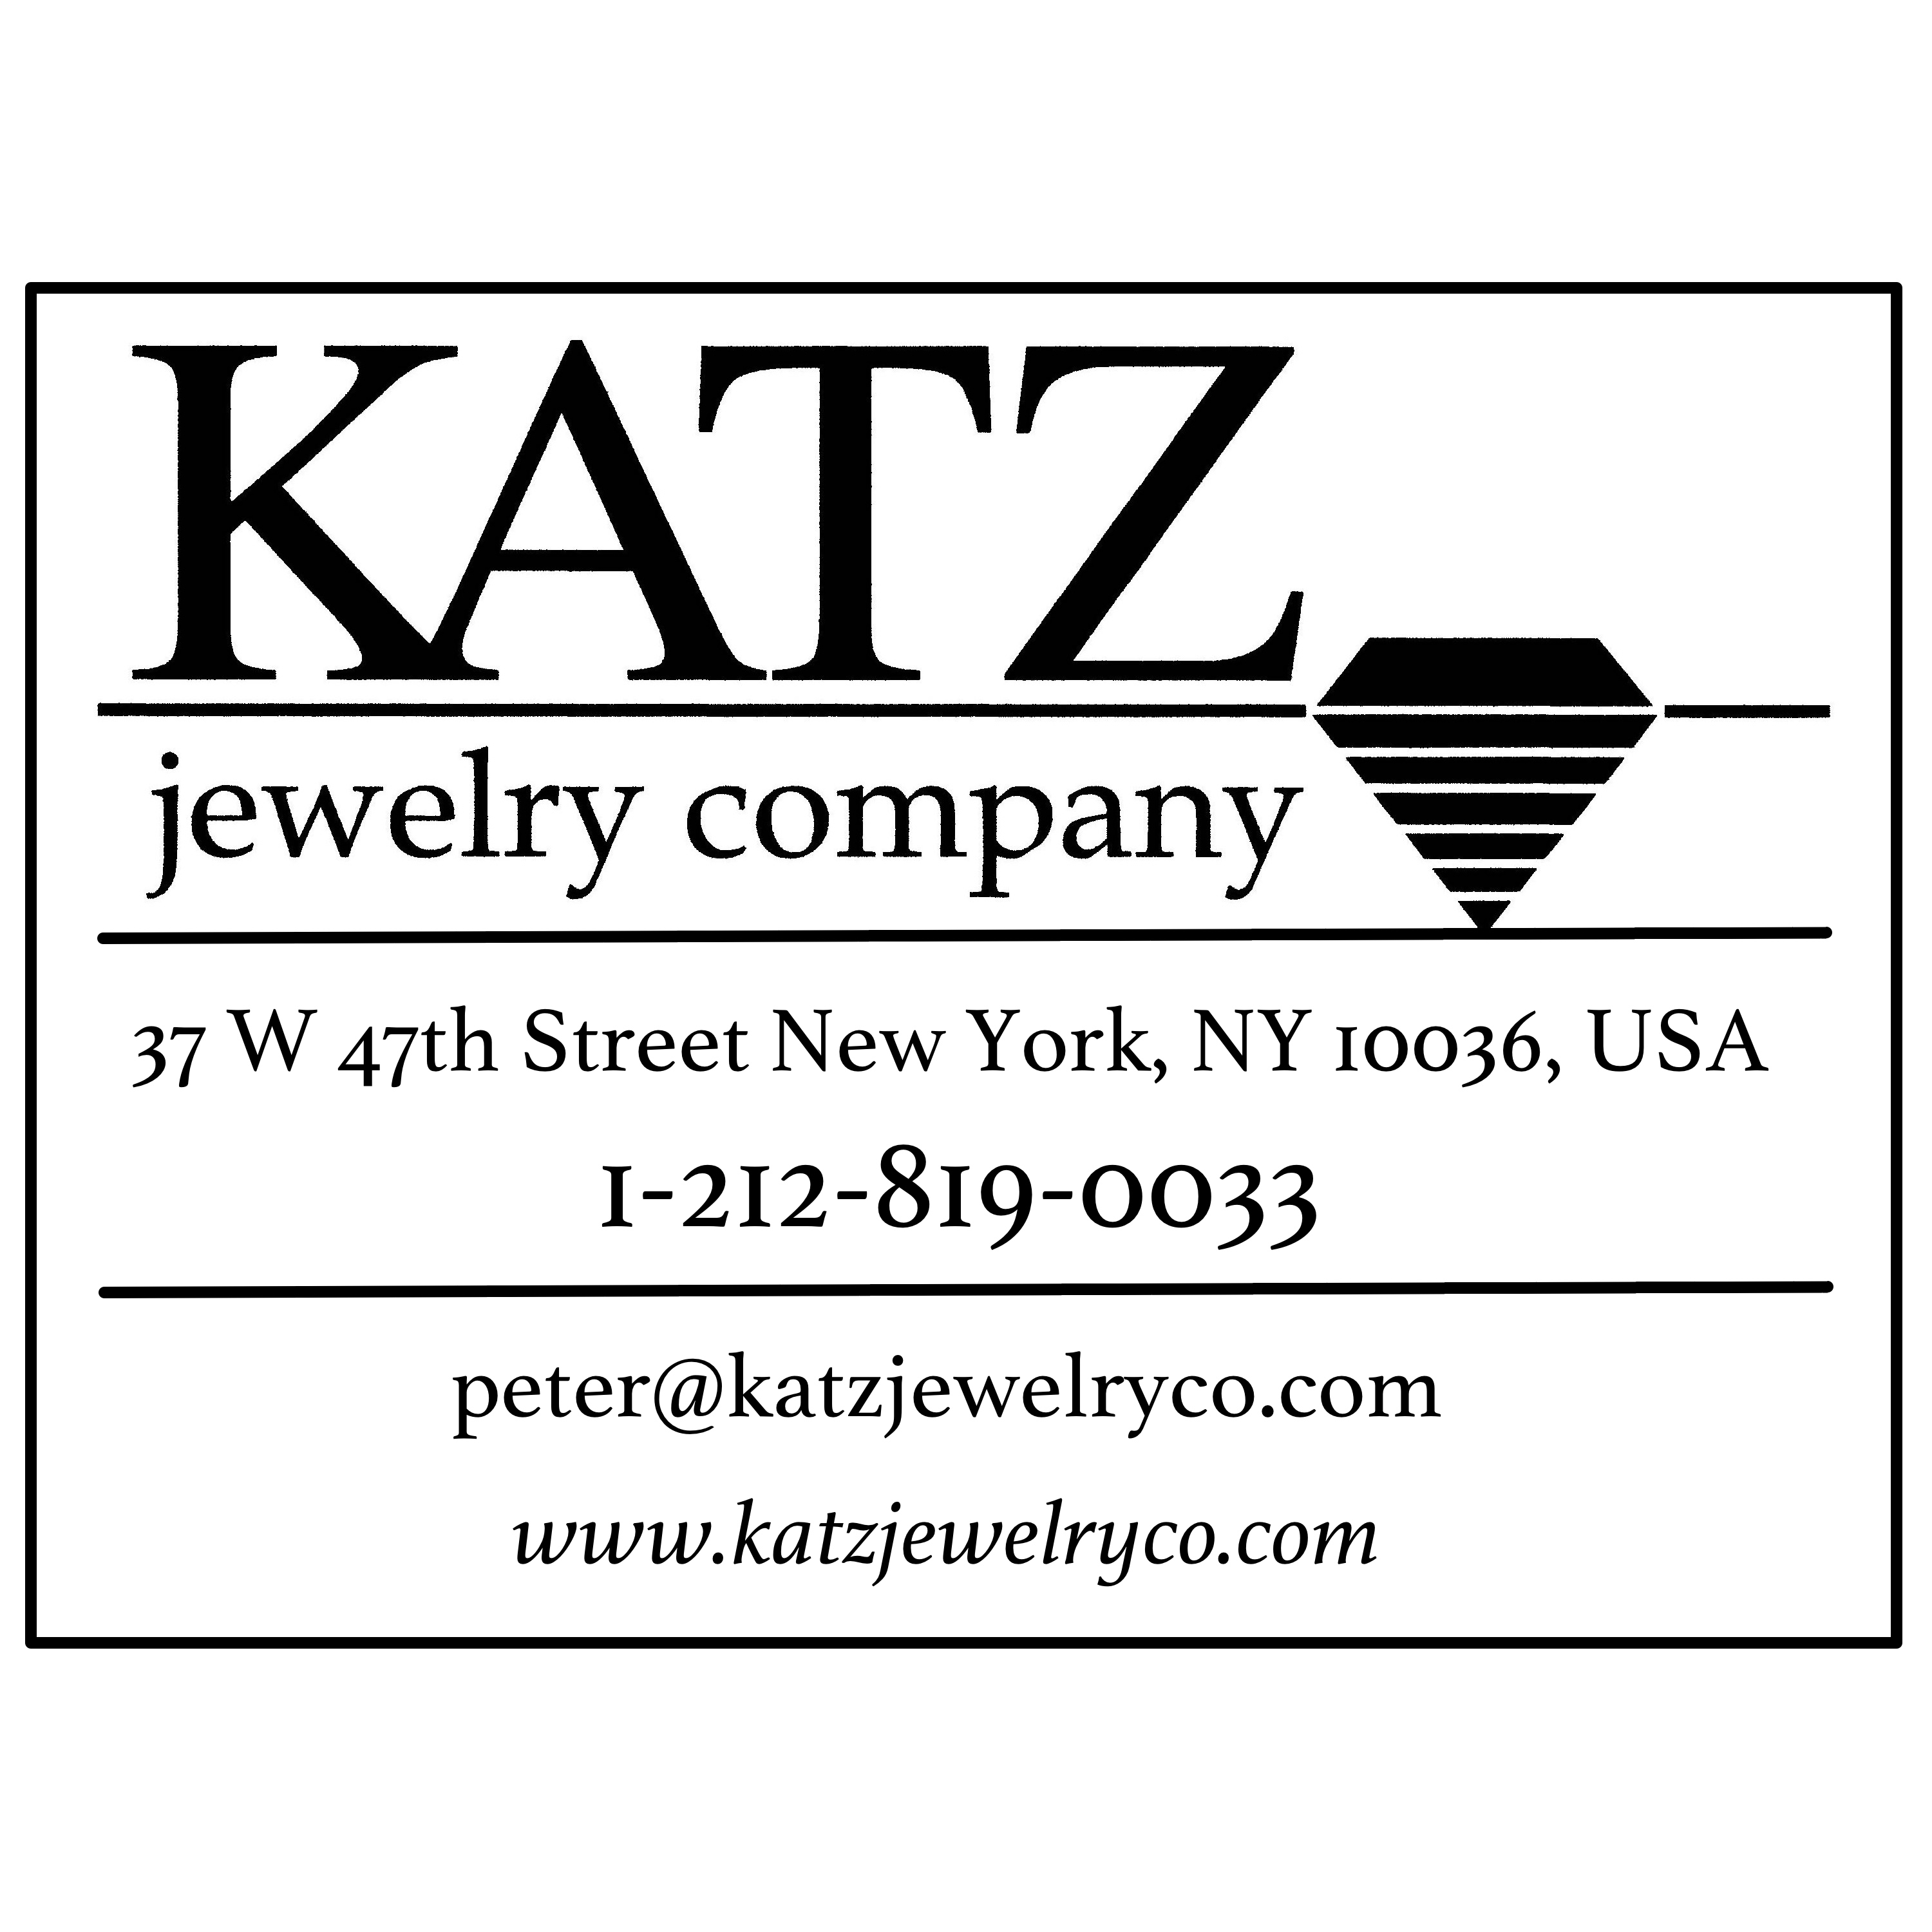 Katz Jewelry Company